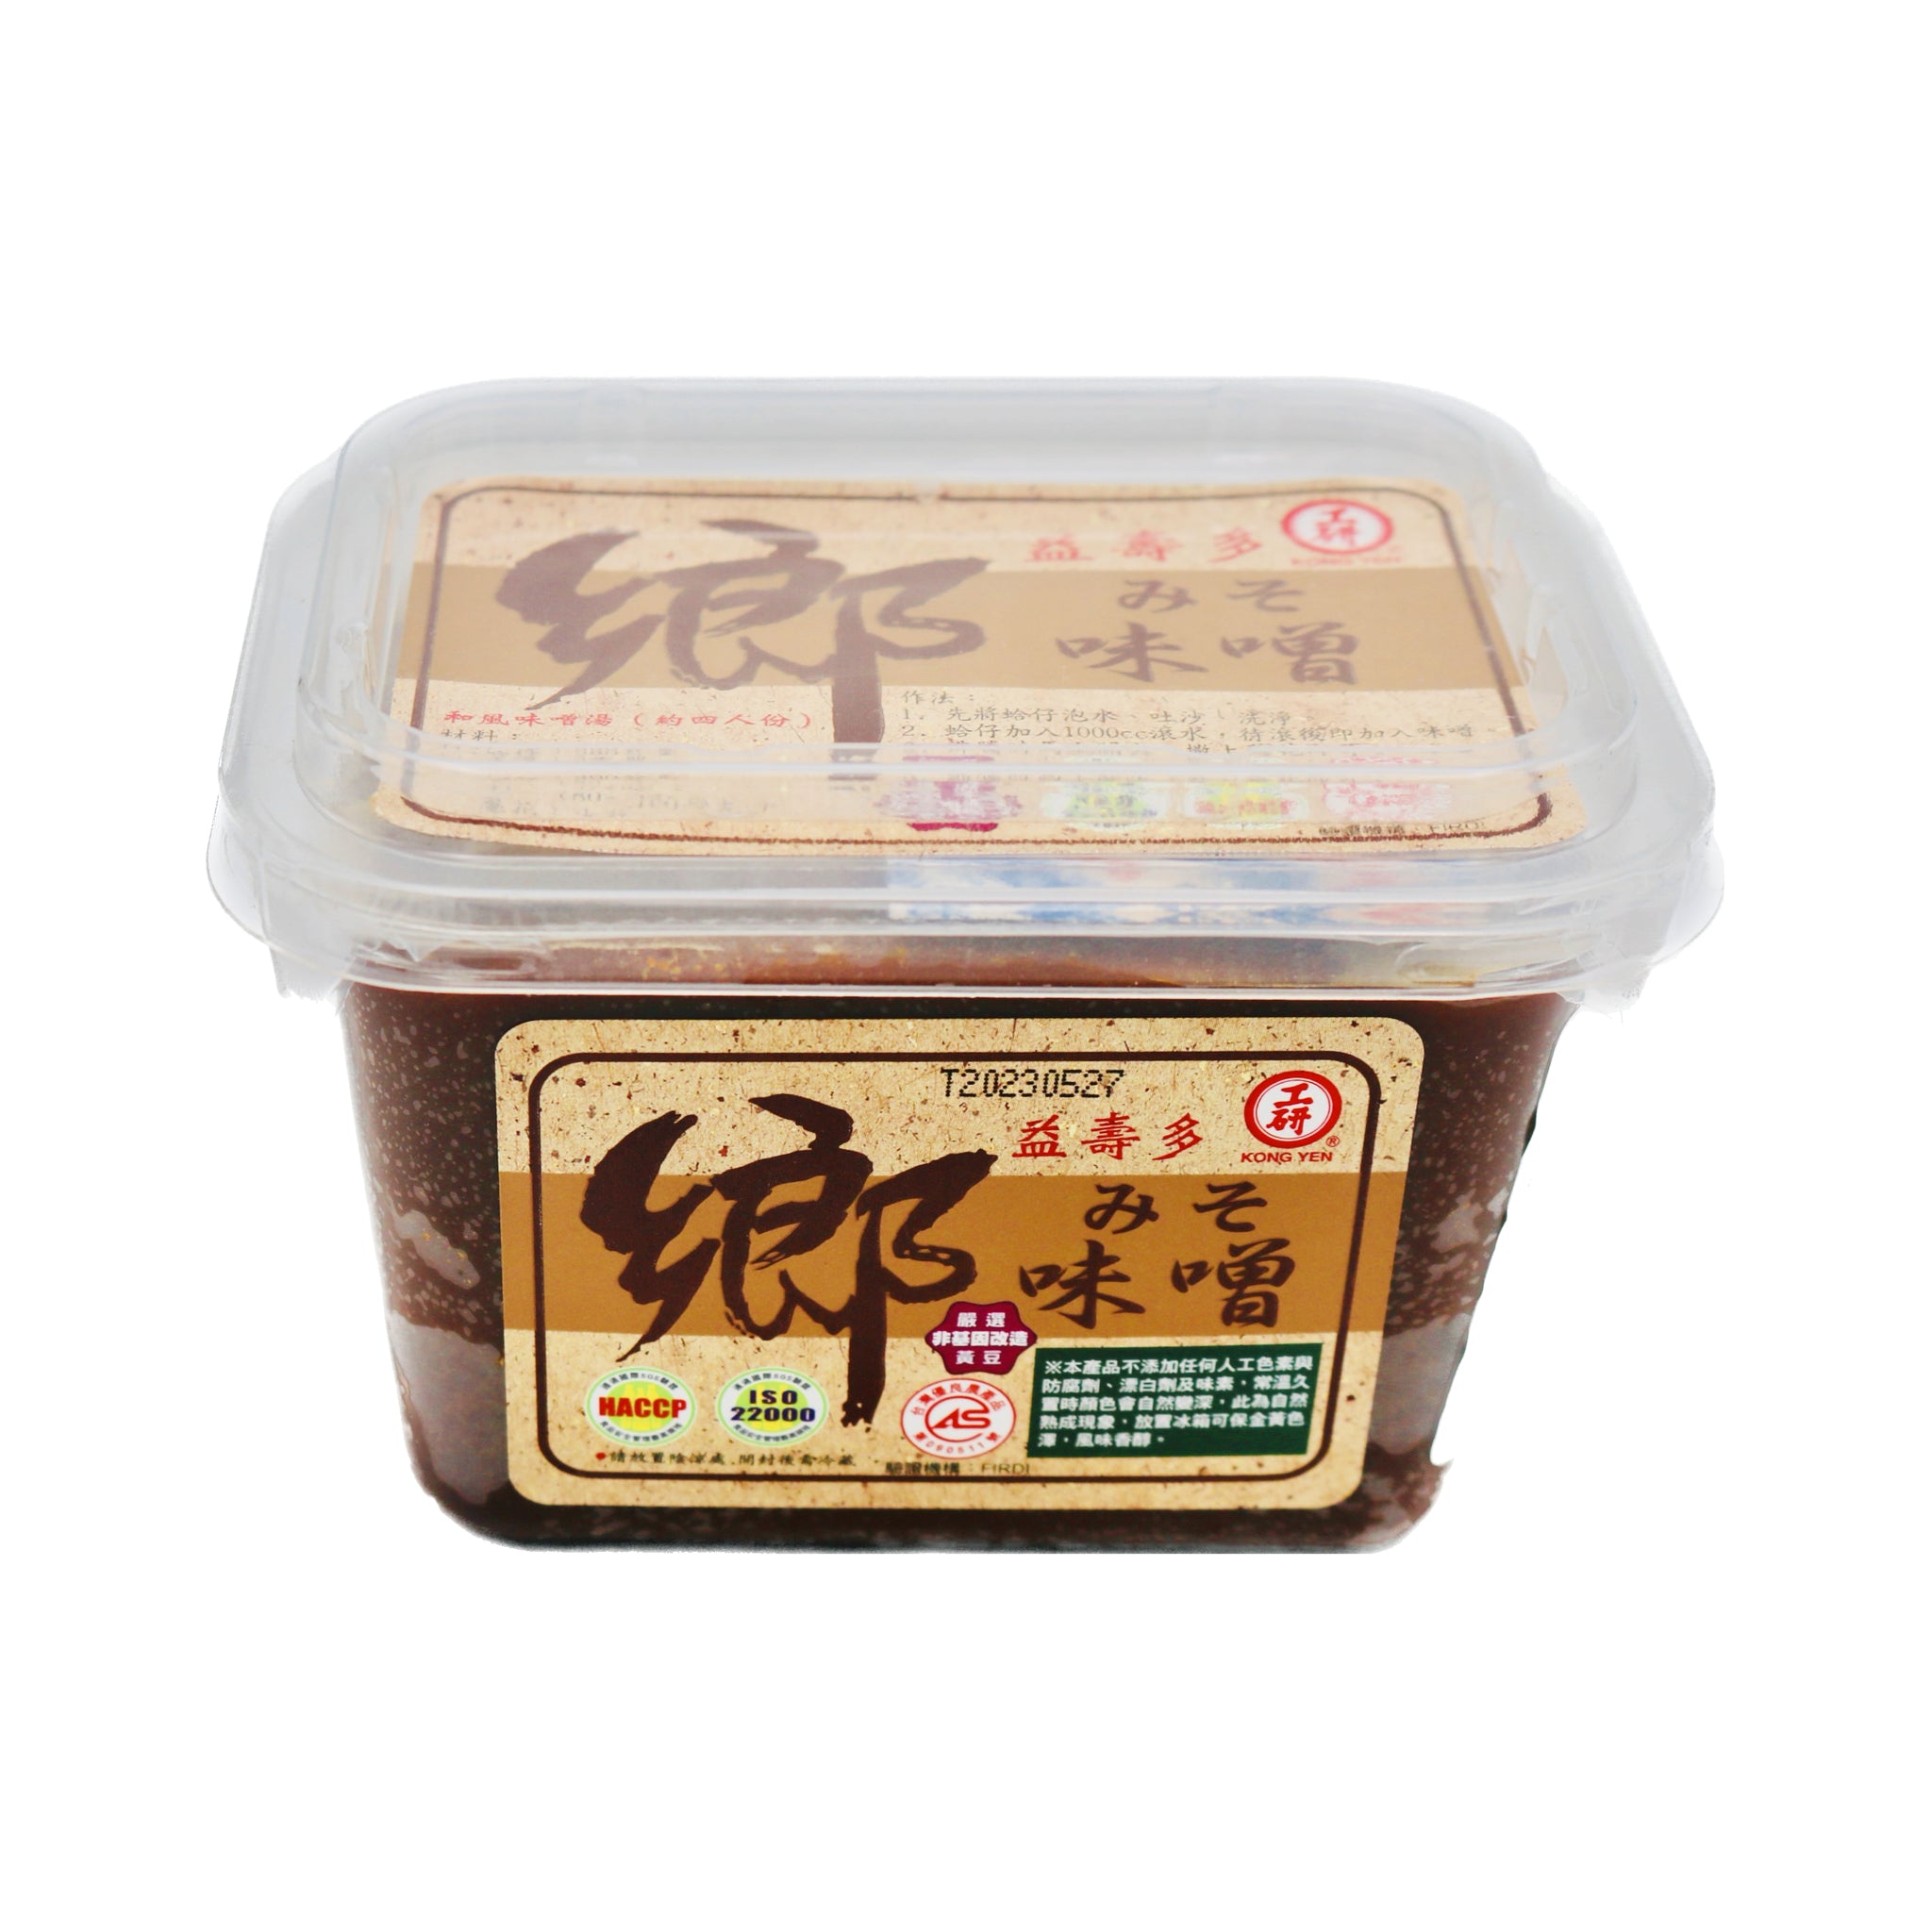 Yutaka Organic Miso Paste 300 g (Pack of 3)